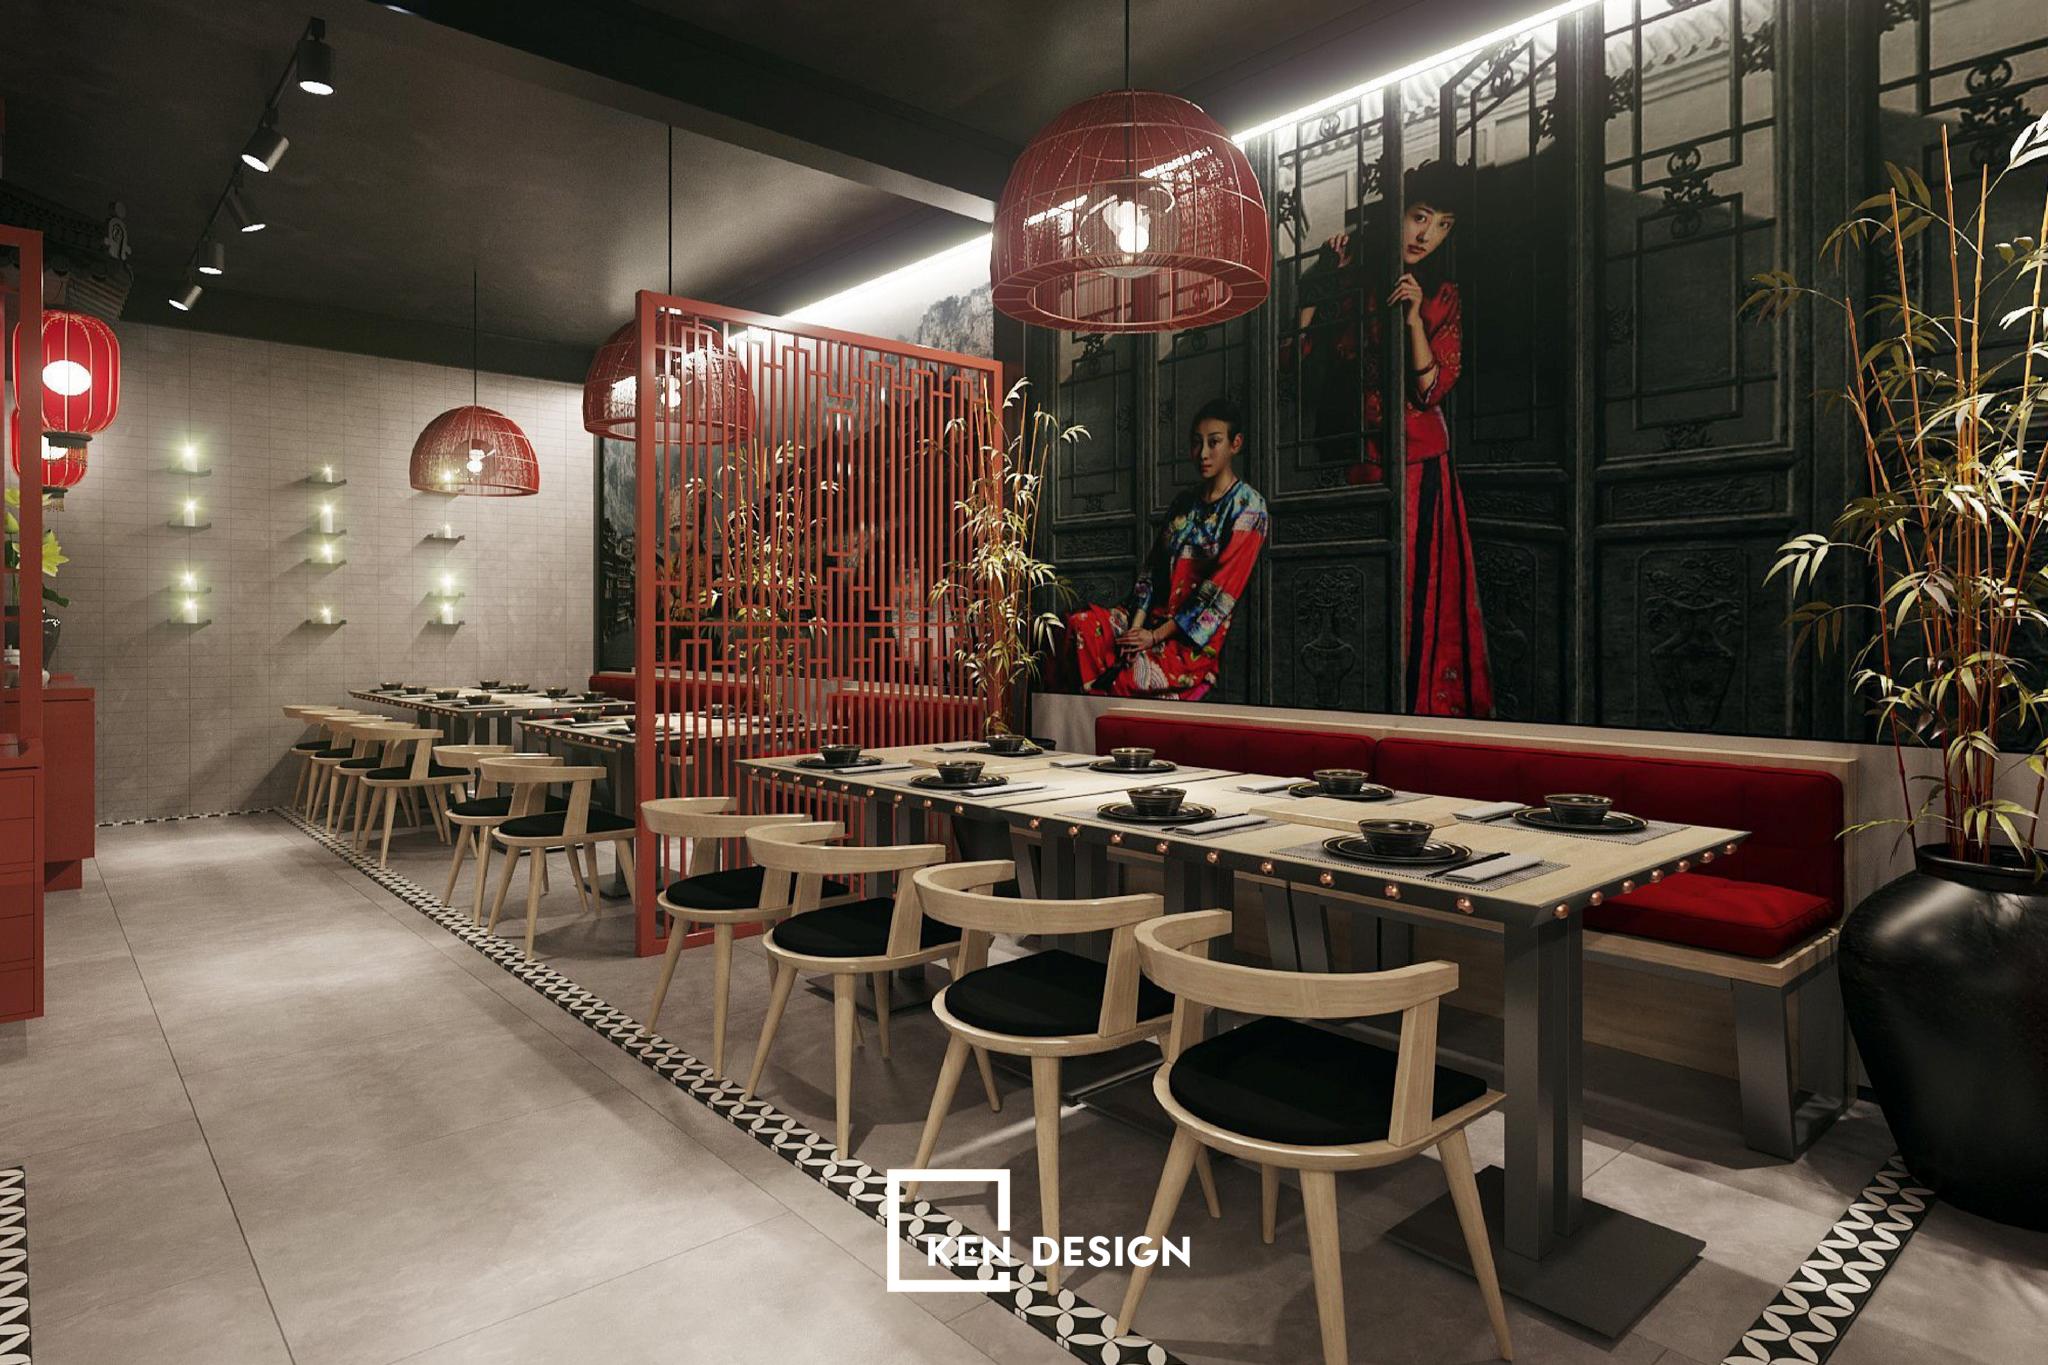 thiết kế nhà hàng Fenghuang có một chút cổ điển